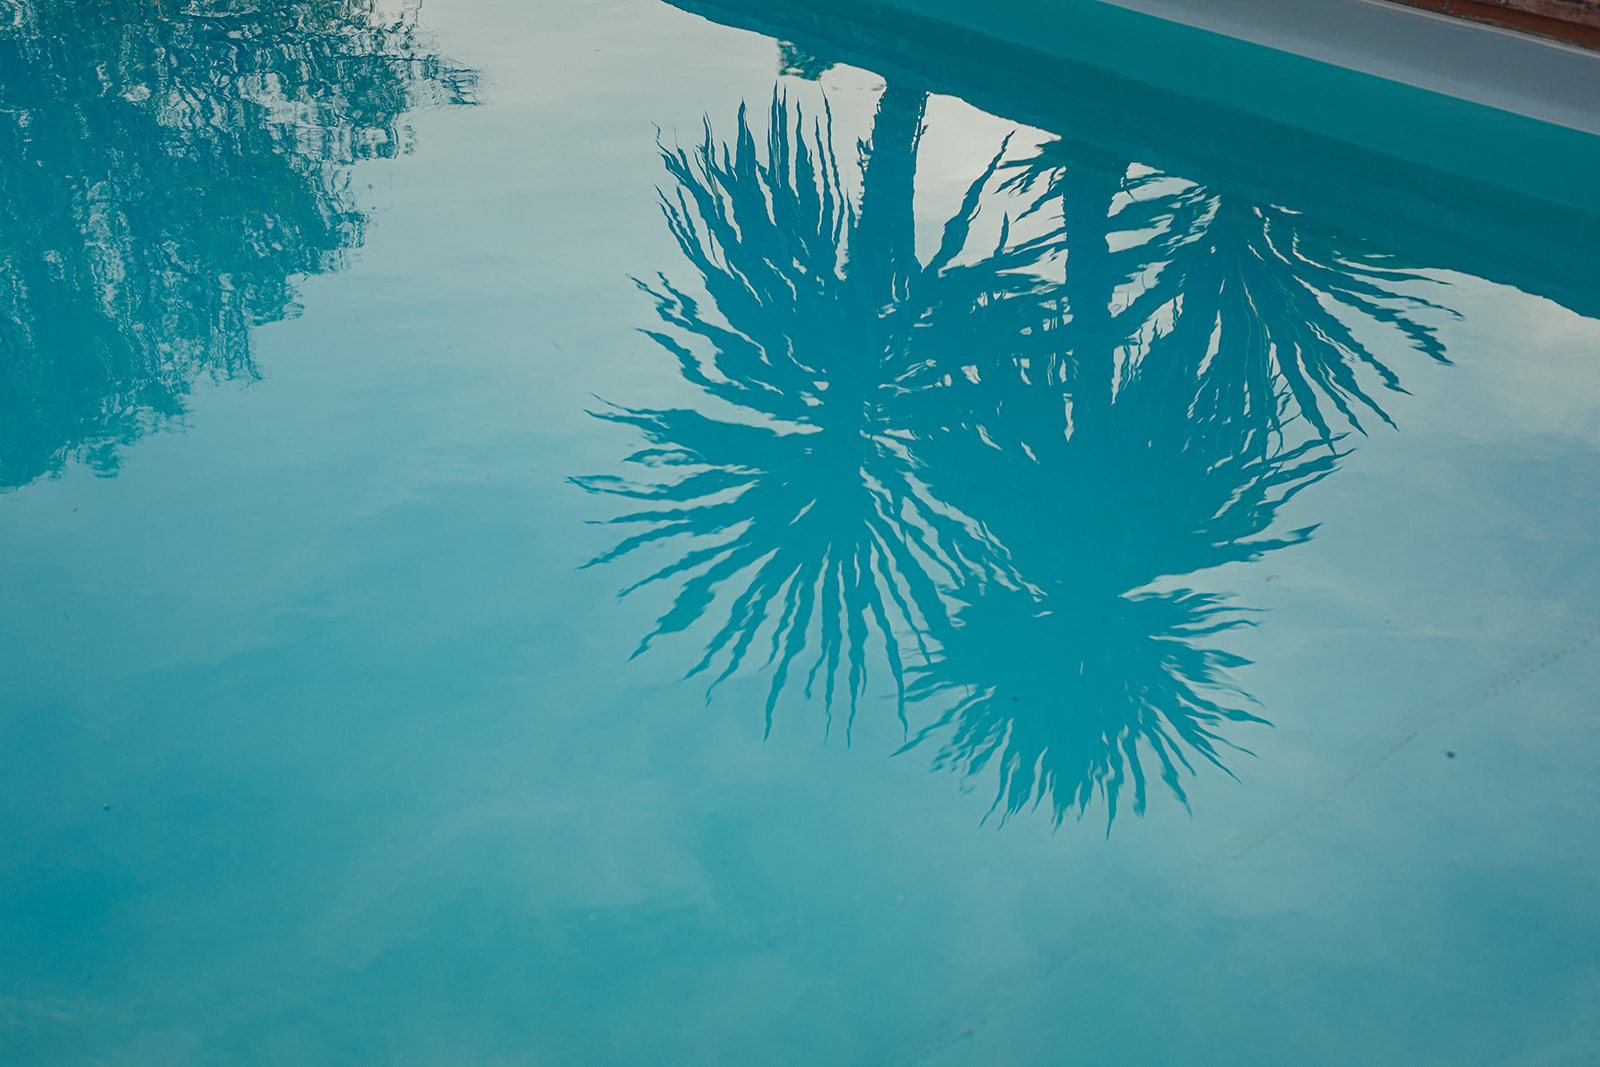 Maison des Arts - Maison vacances piscine et terrain de padel mirande gers - @Gascognecollection